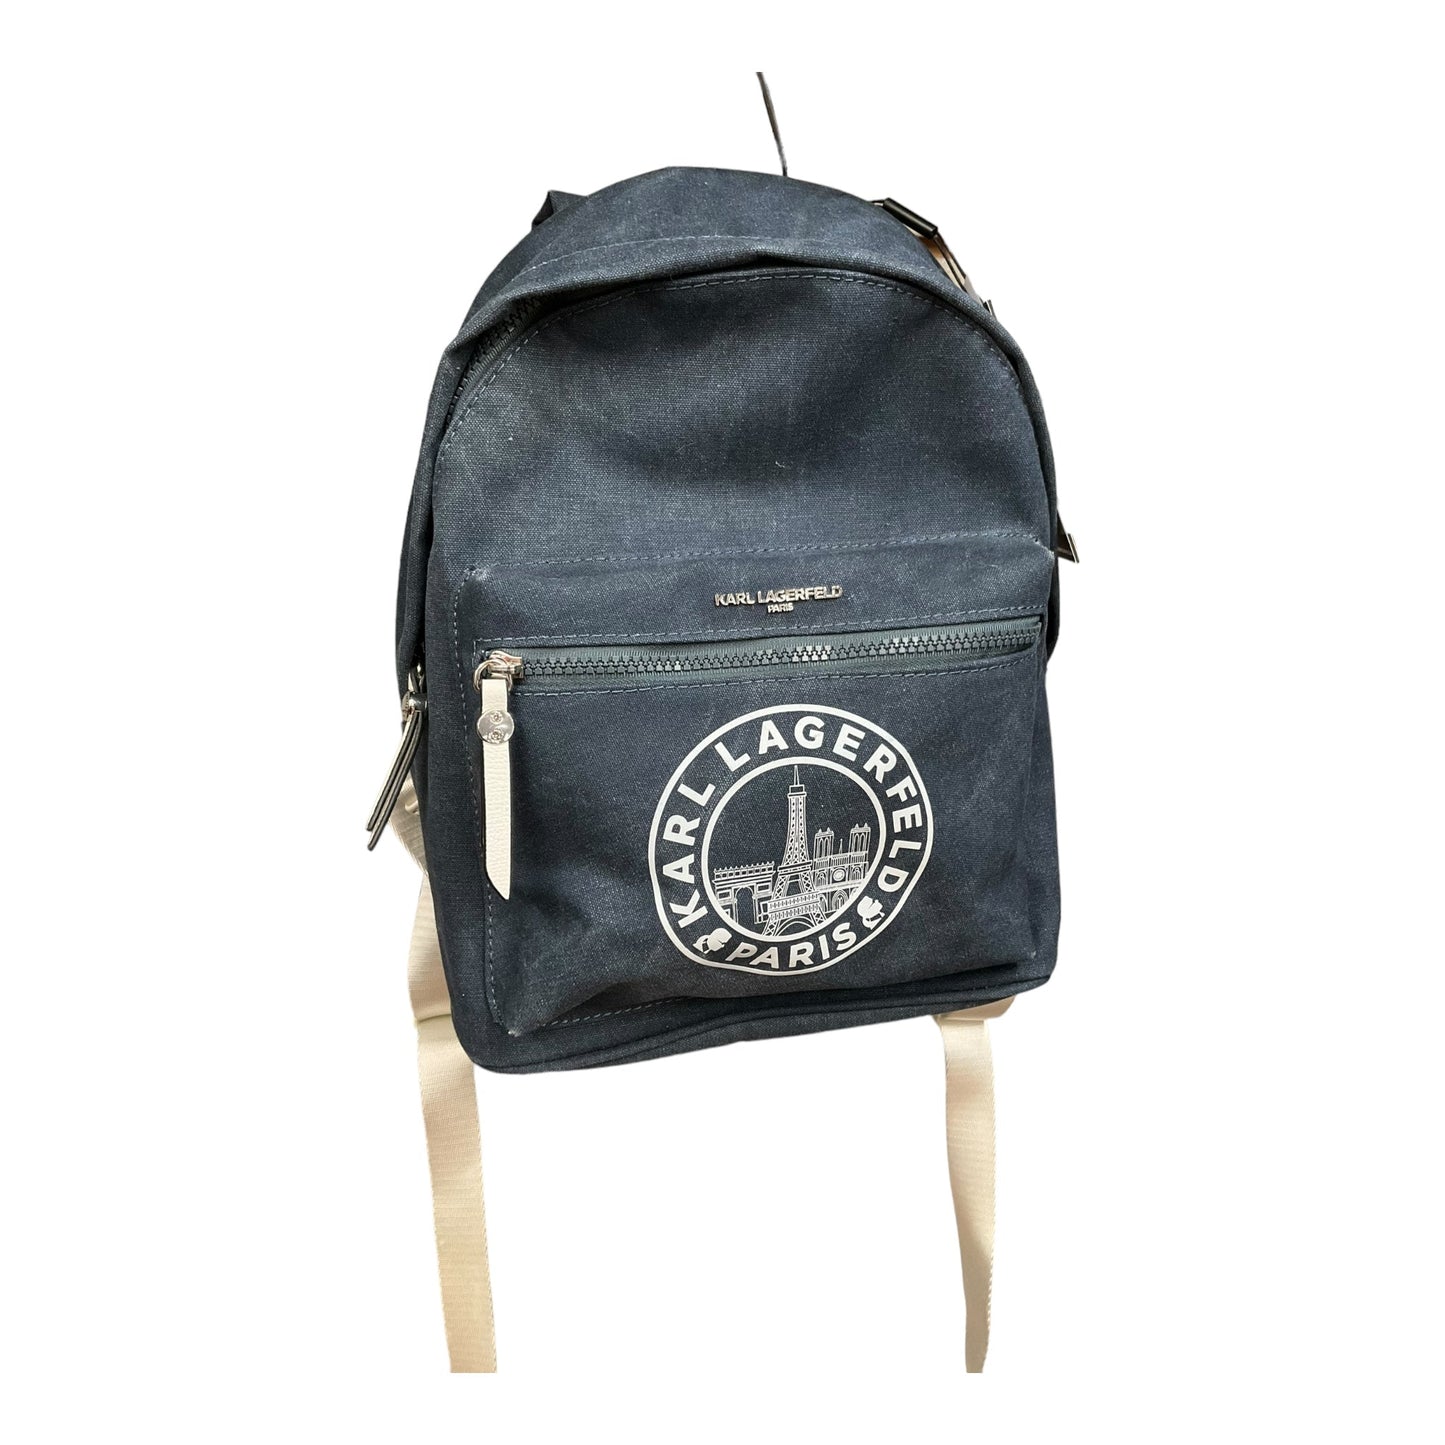 Backpack Designer Karl Lagerfeld, Size Small